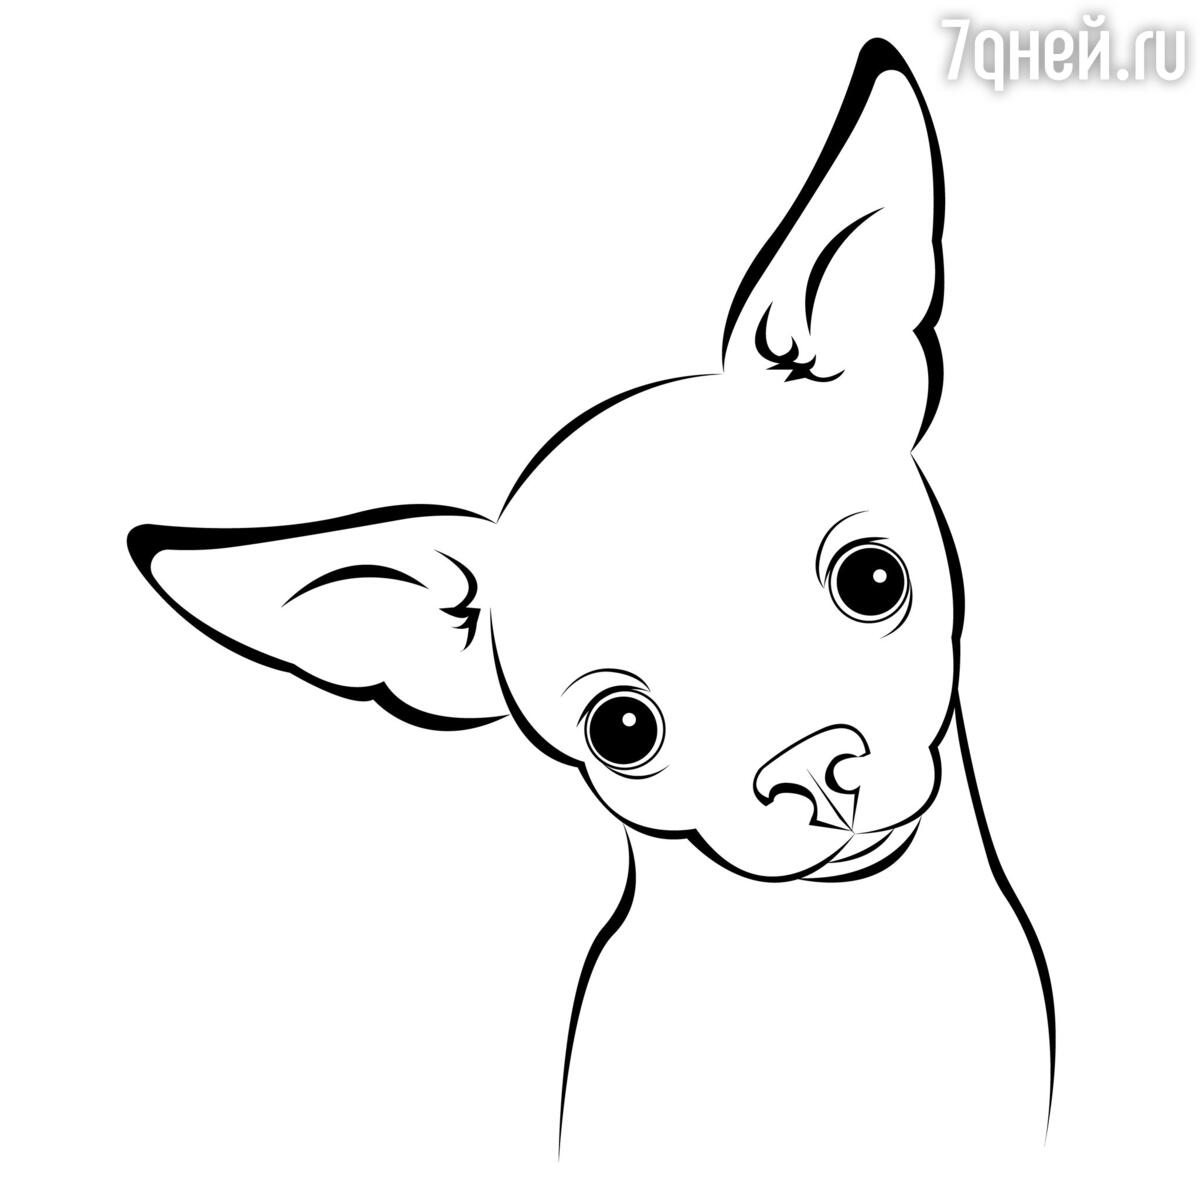 Рисуем собаку - Видео